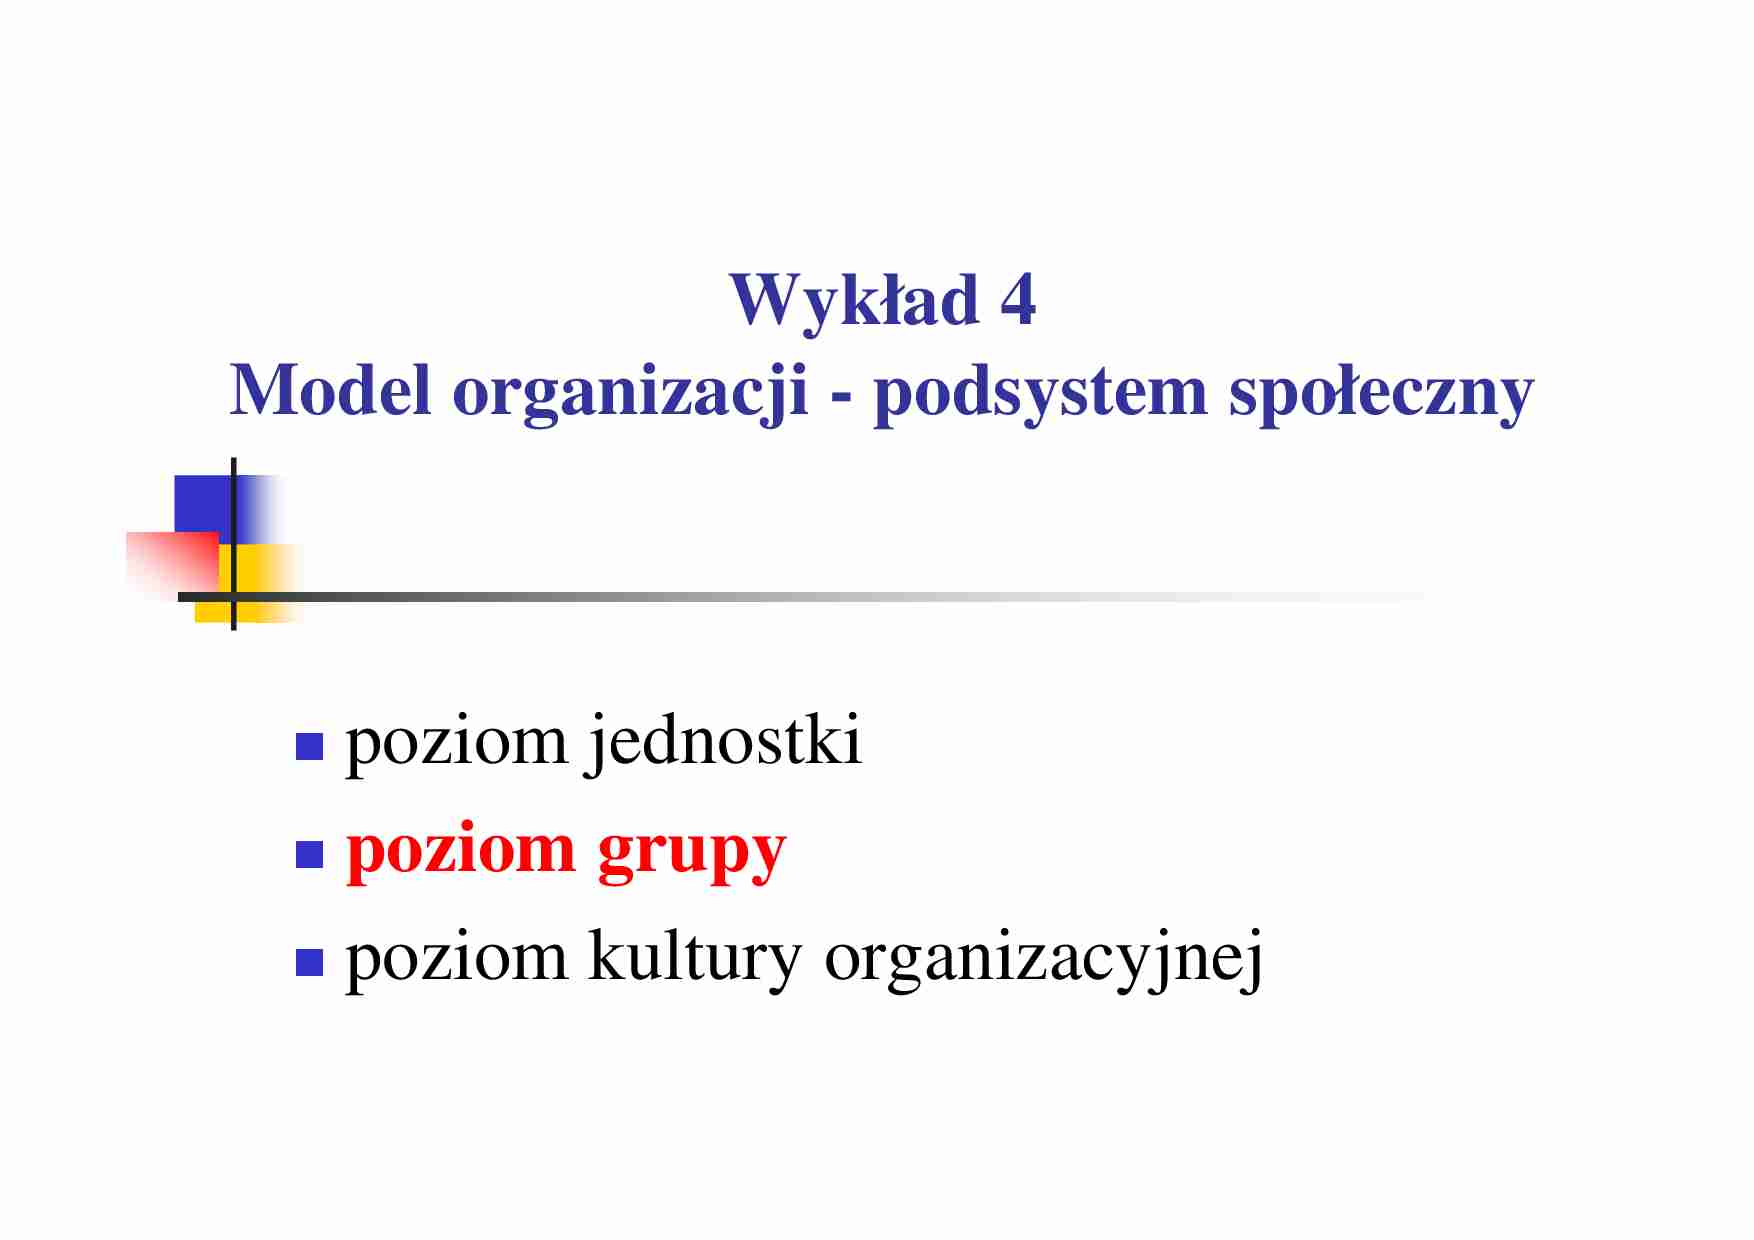 Model organizacji - podsystem społeczny, wykład - strona 1